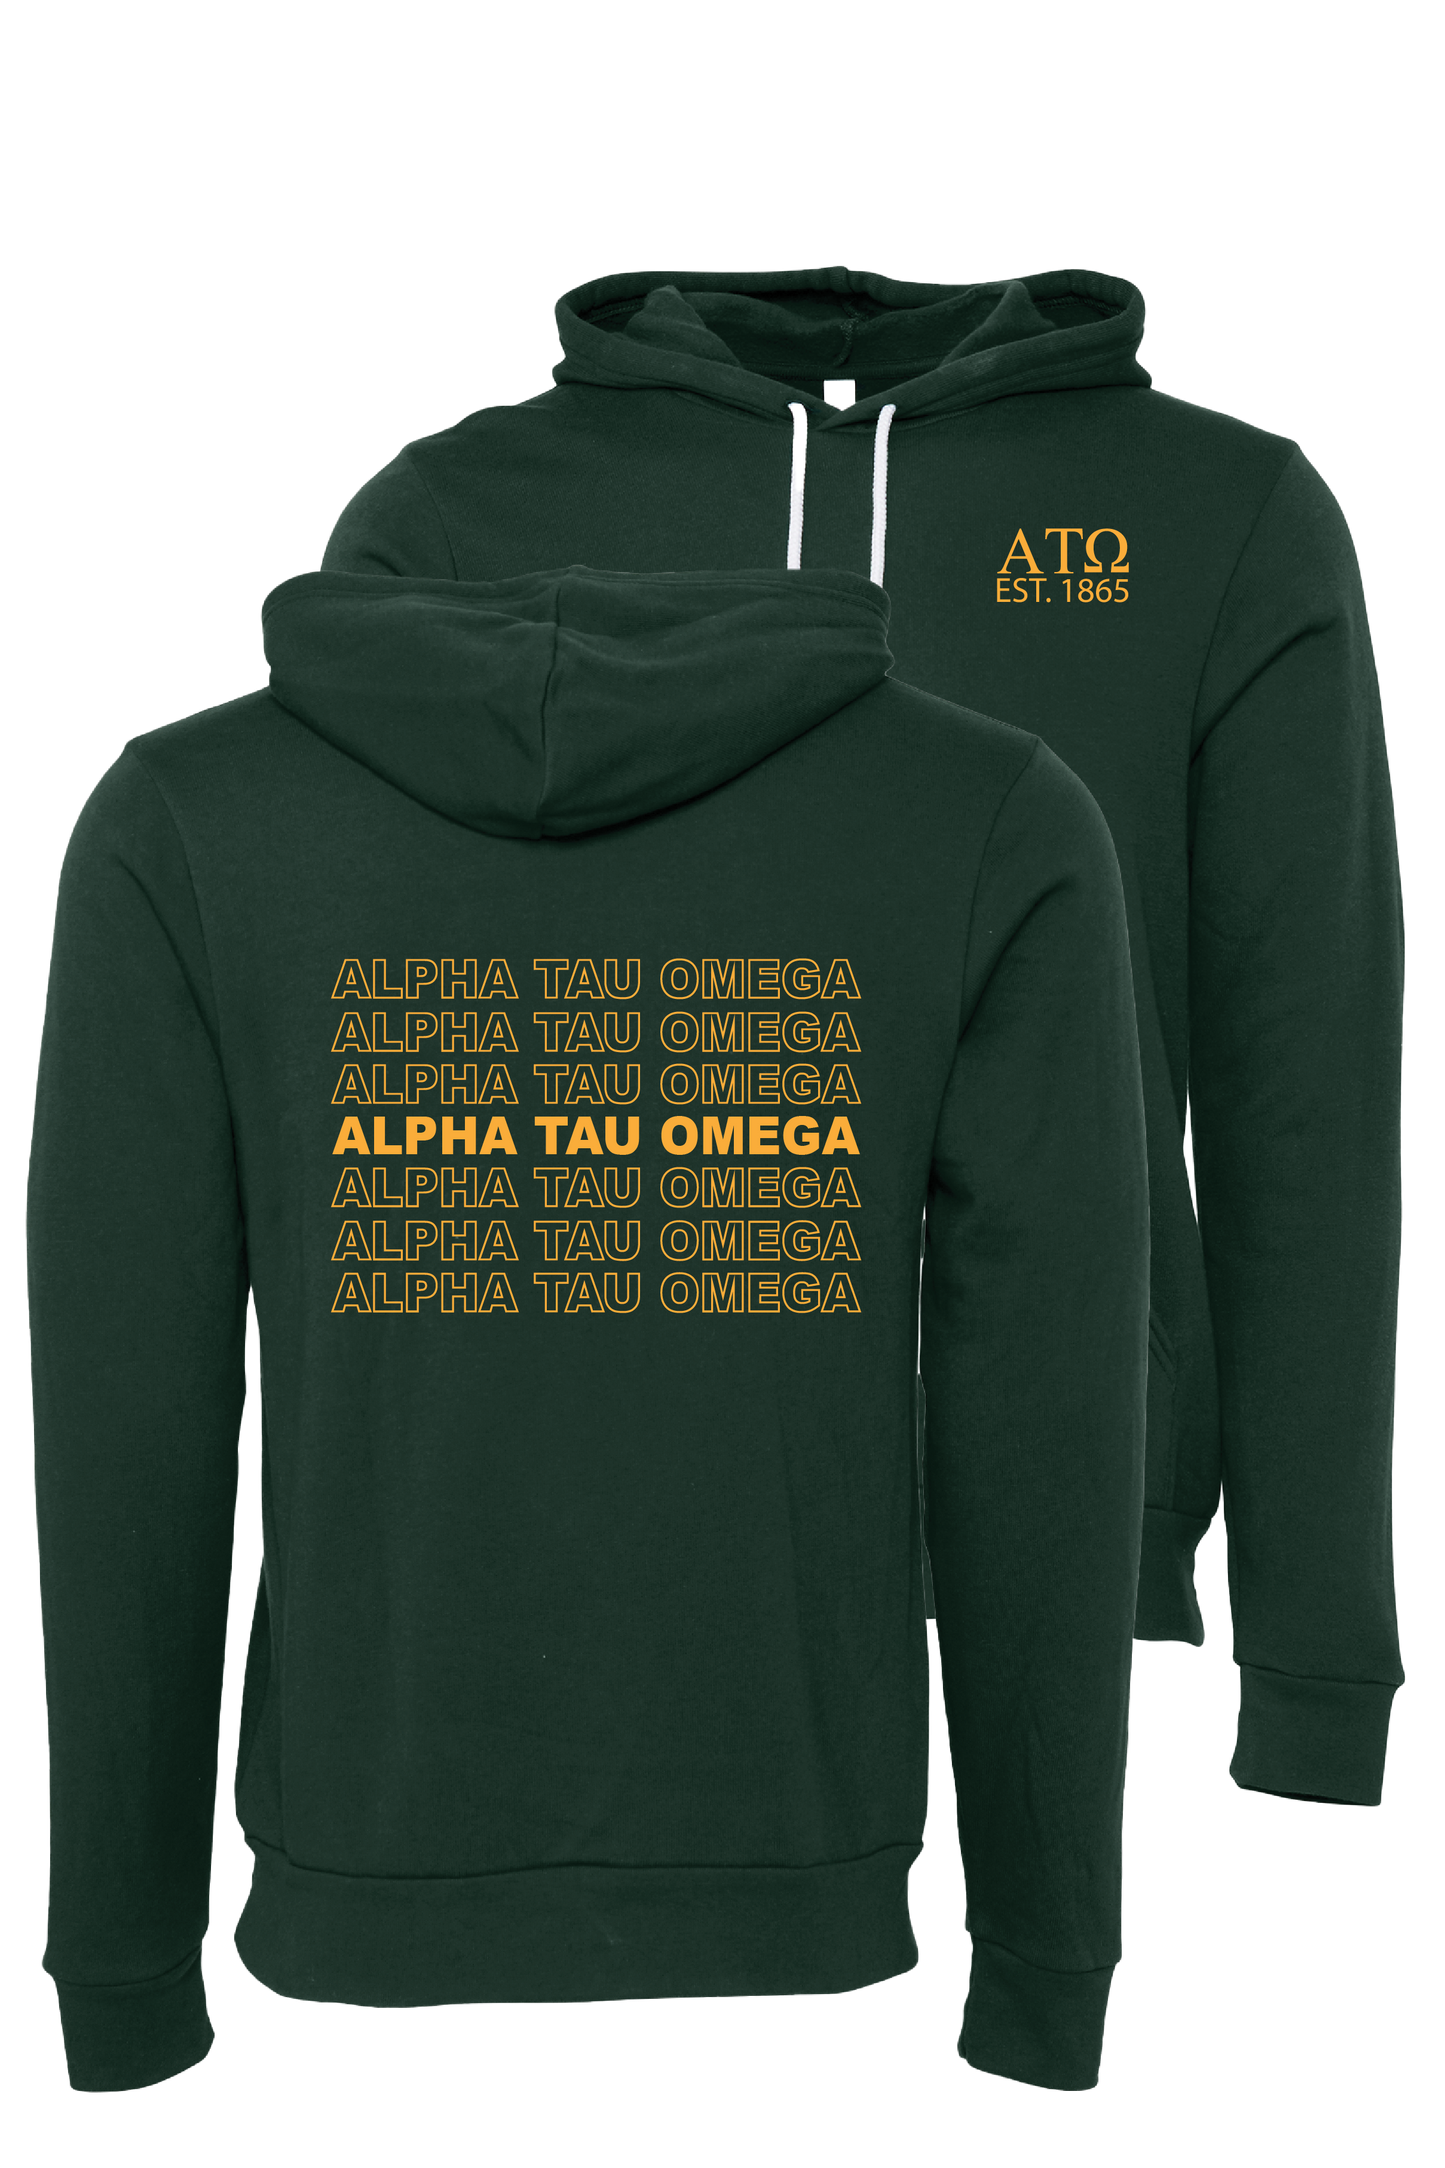 Alpha Tau Omega Repeating Name Hooded Sweatshirts